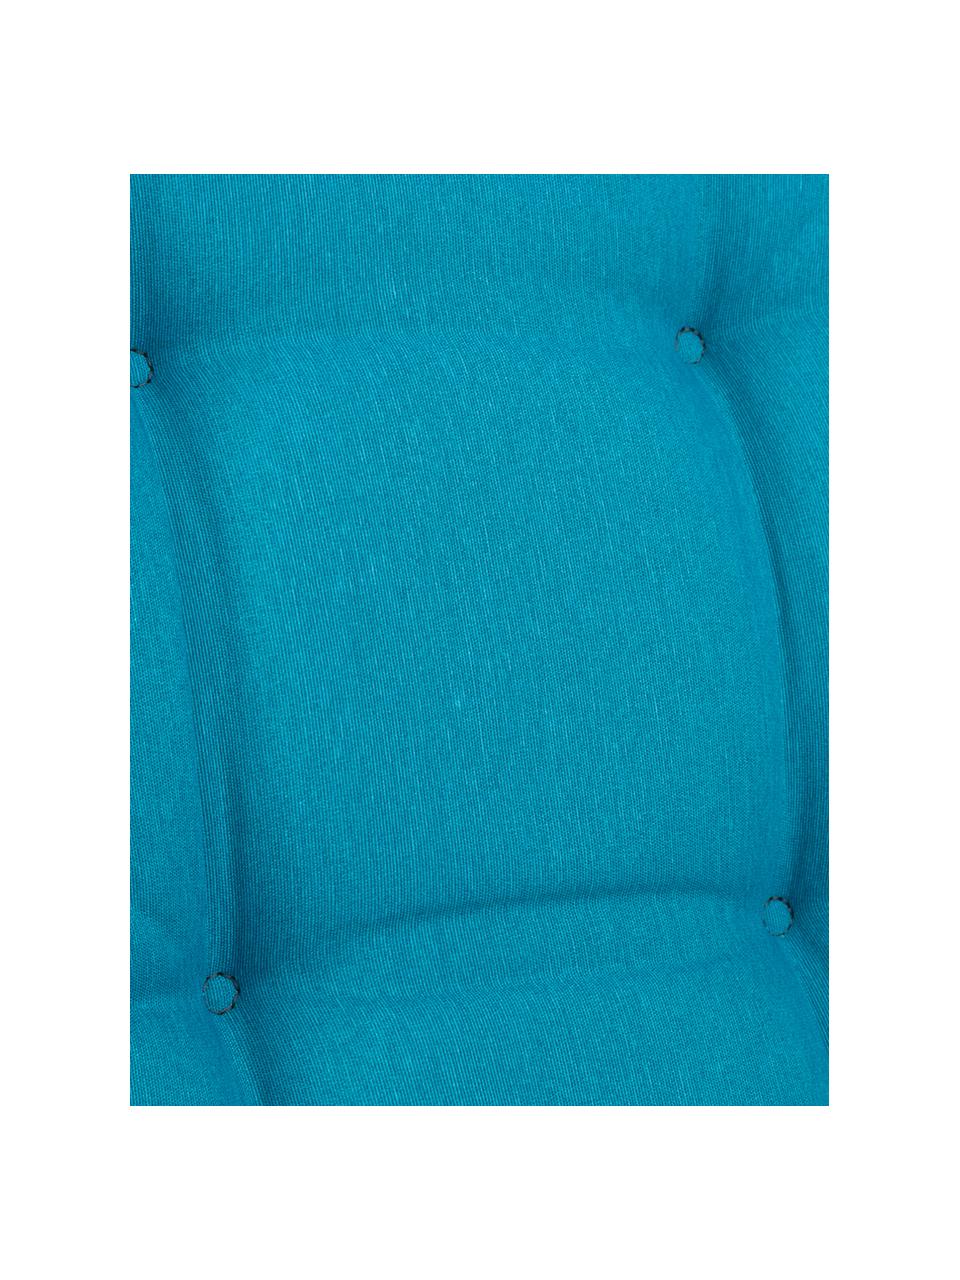 Jednobarevná podložka na křeslo s vysokým opěradlem Panama, Tyrkysově modrá